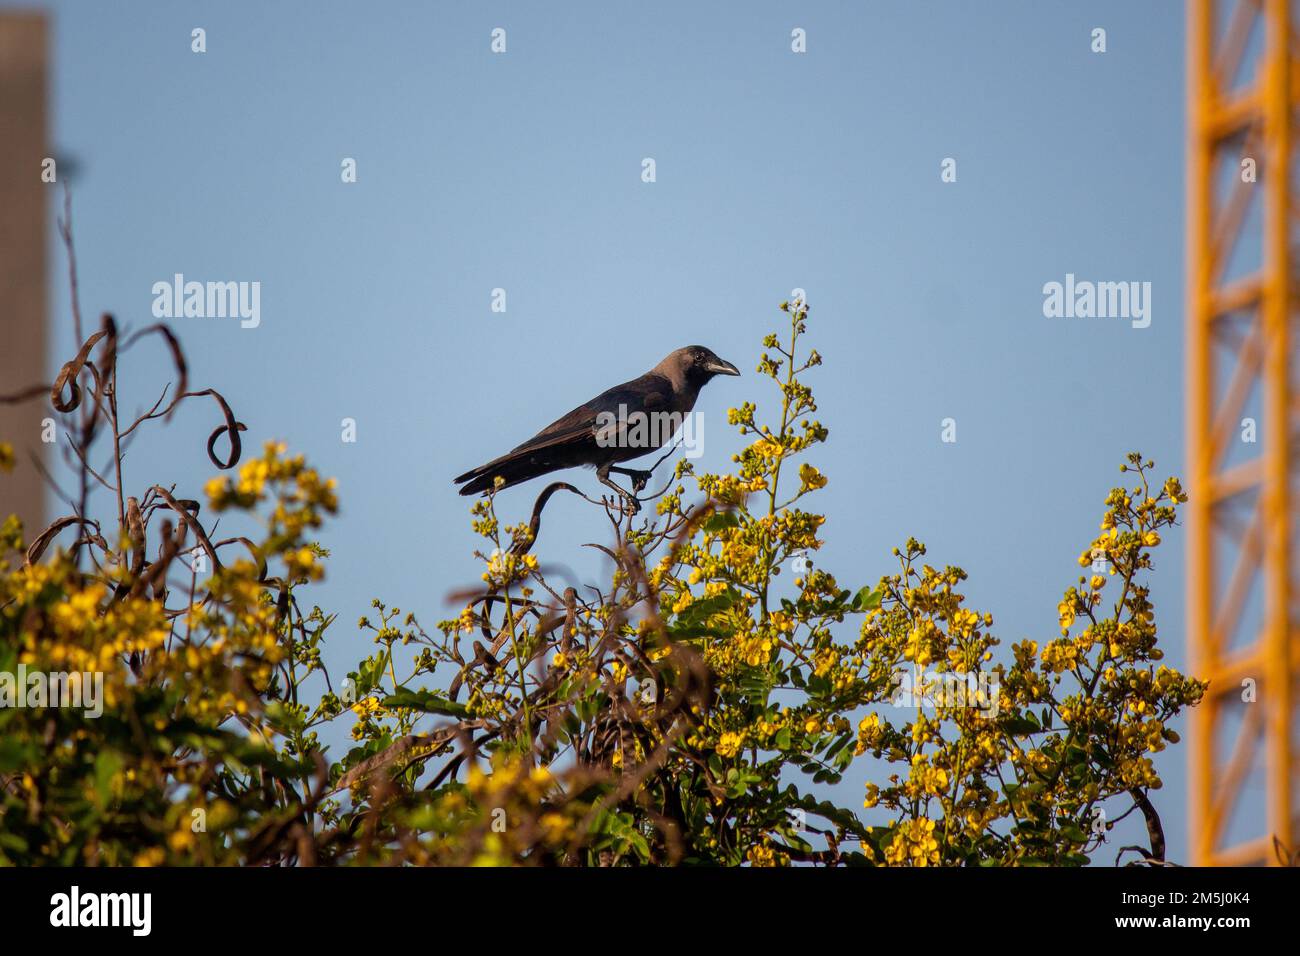 Le Corvus splendens perchée sur un arbre en acacia (Acacia nilotica) aux fleurs jaunes Banque D'Images